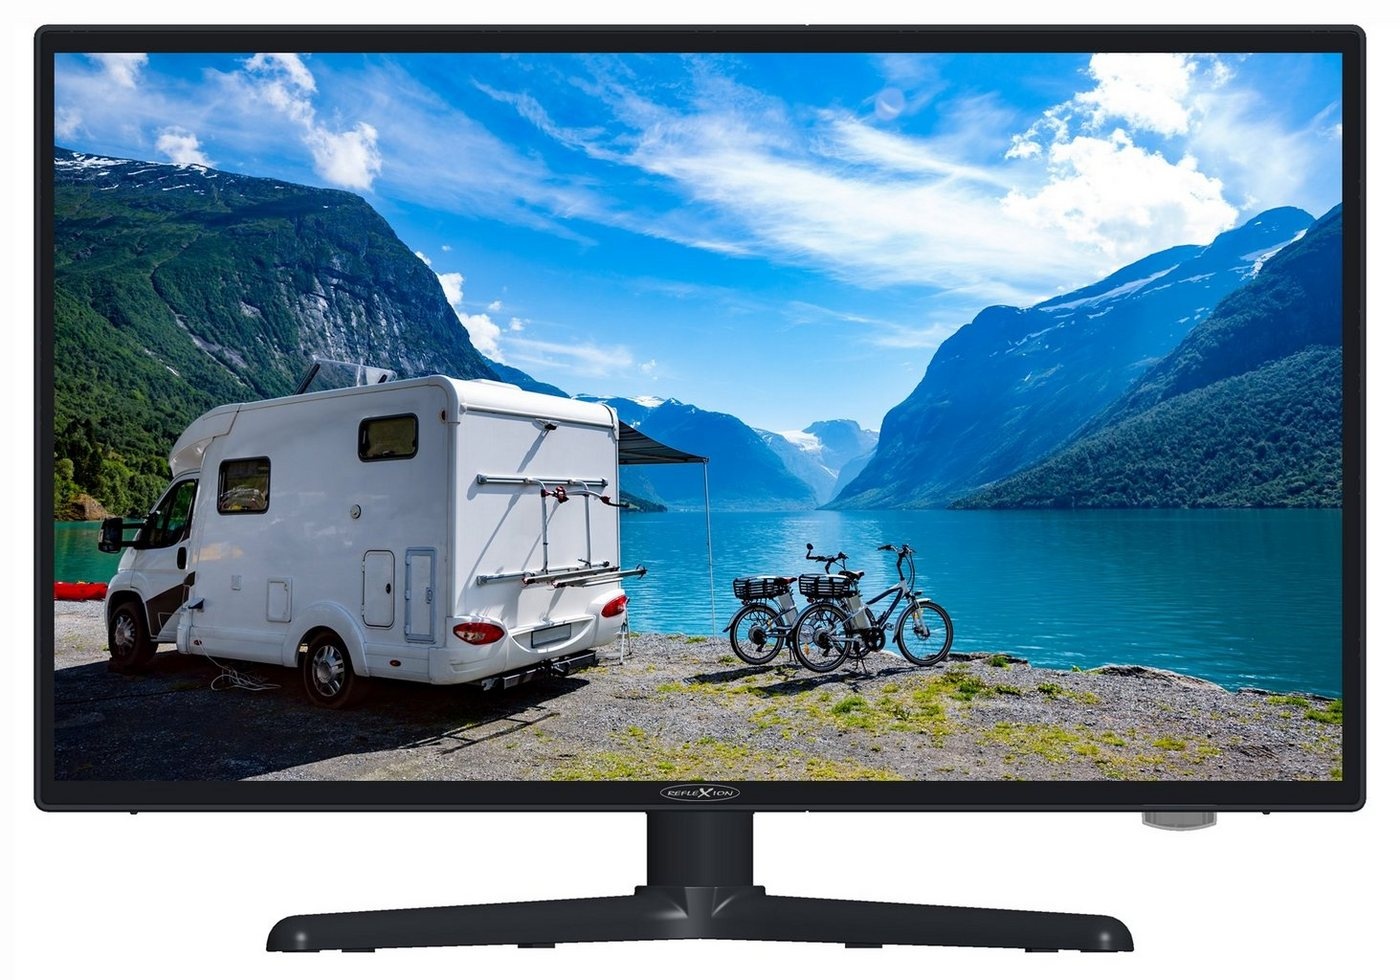 Reflexion LEDW240+ LED-Fernseher (60,00 cm/24 Zoll, Full HD, DC IN 12 Volt / 24 Volt, Netzteil 230 Volt, Fernseher für Wohnwagen, Wohnmobil, Camping, Caravan) schwarz